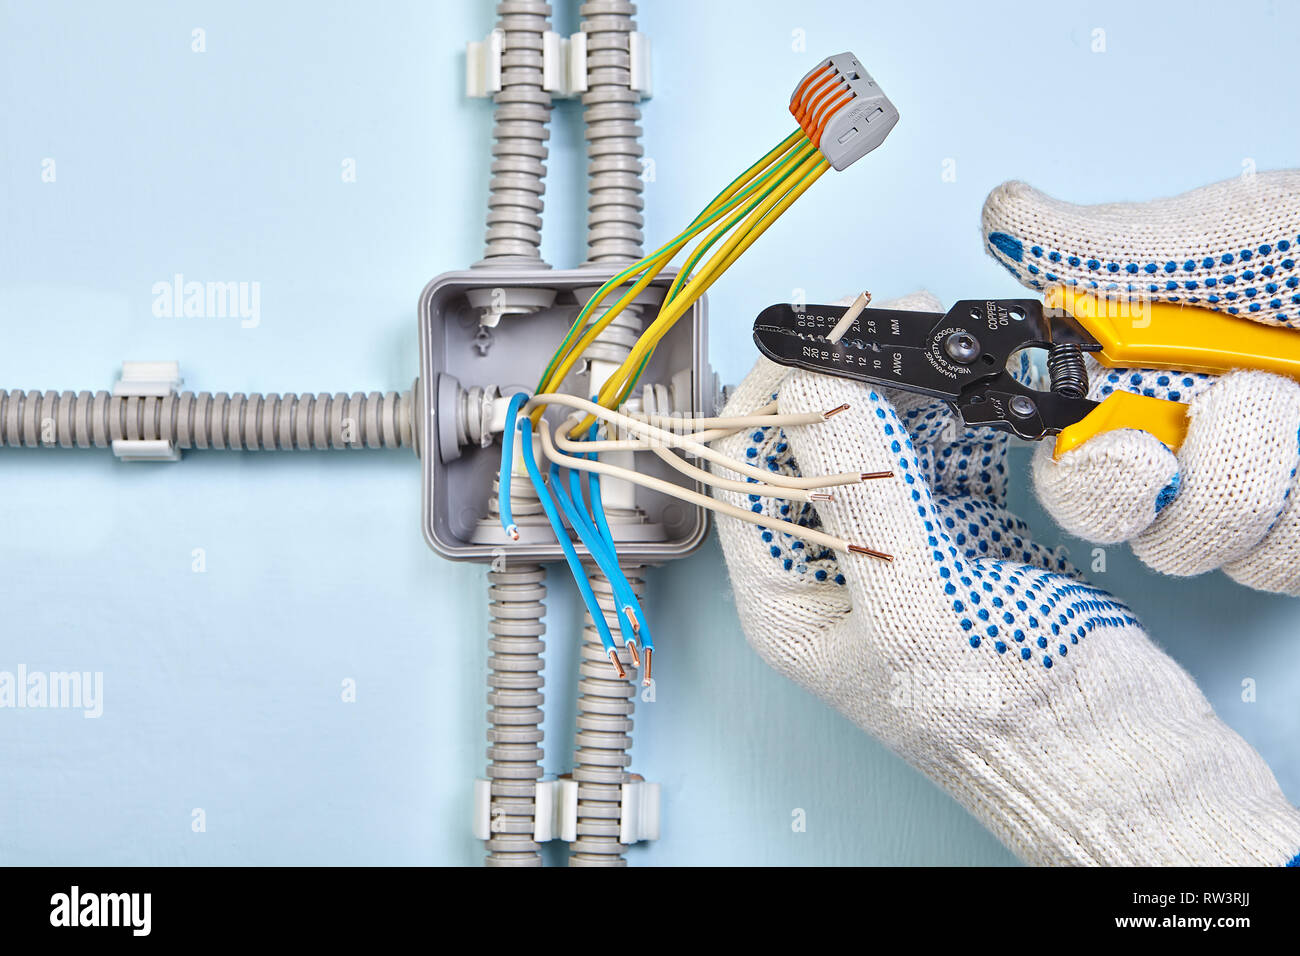 Ein Elektriker ist Abisolieren der Kabel Isolierung mit einer  Abisolierzange Werkzeug Stockfotografie - Alamy